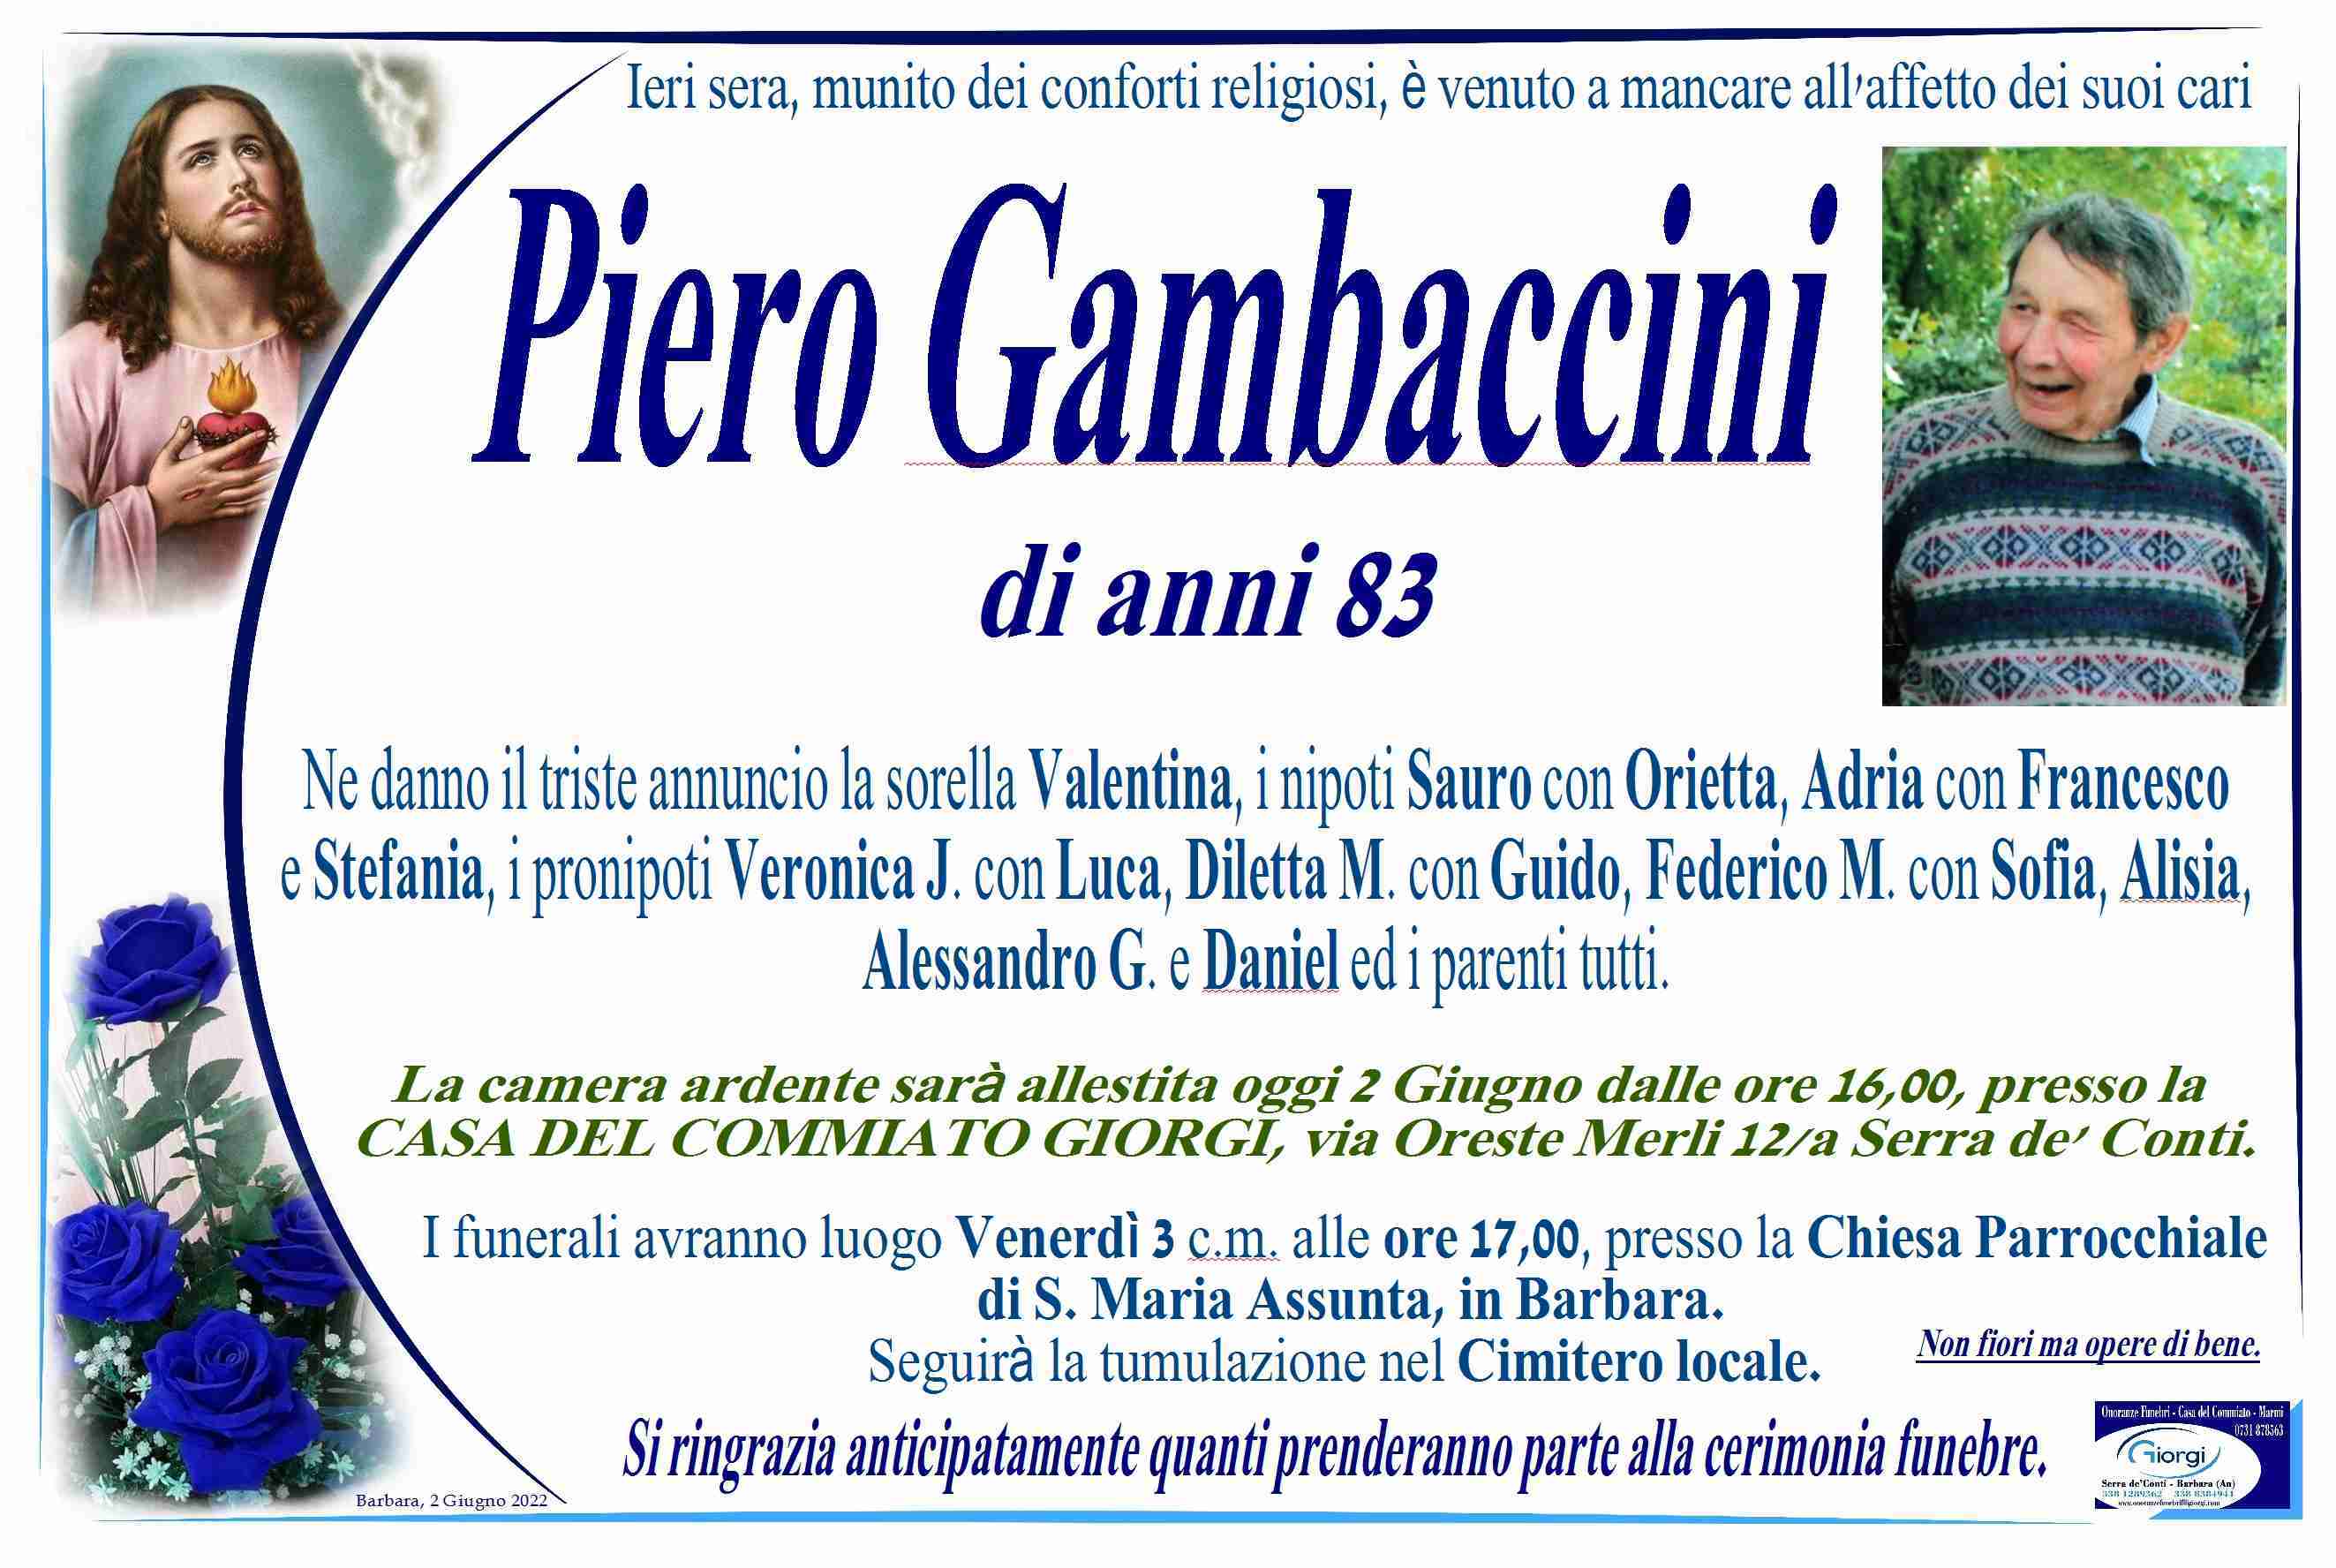 Piero Gambaccini